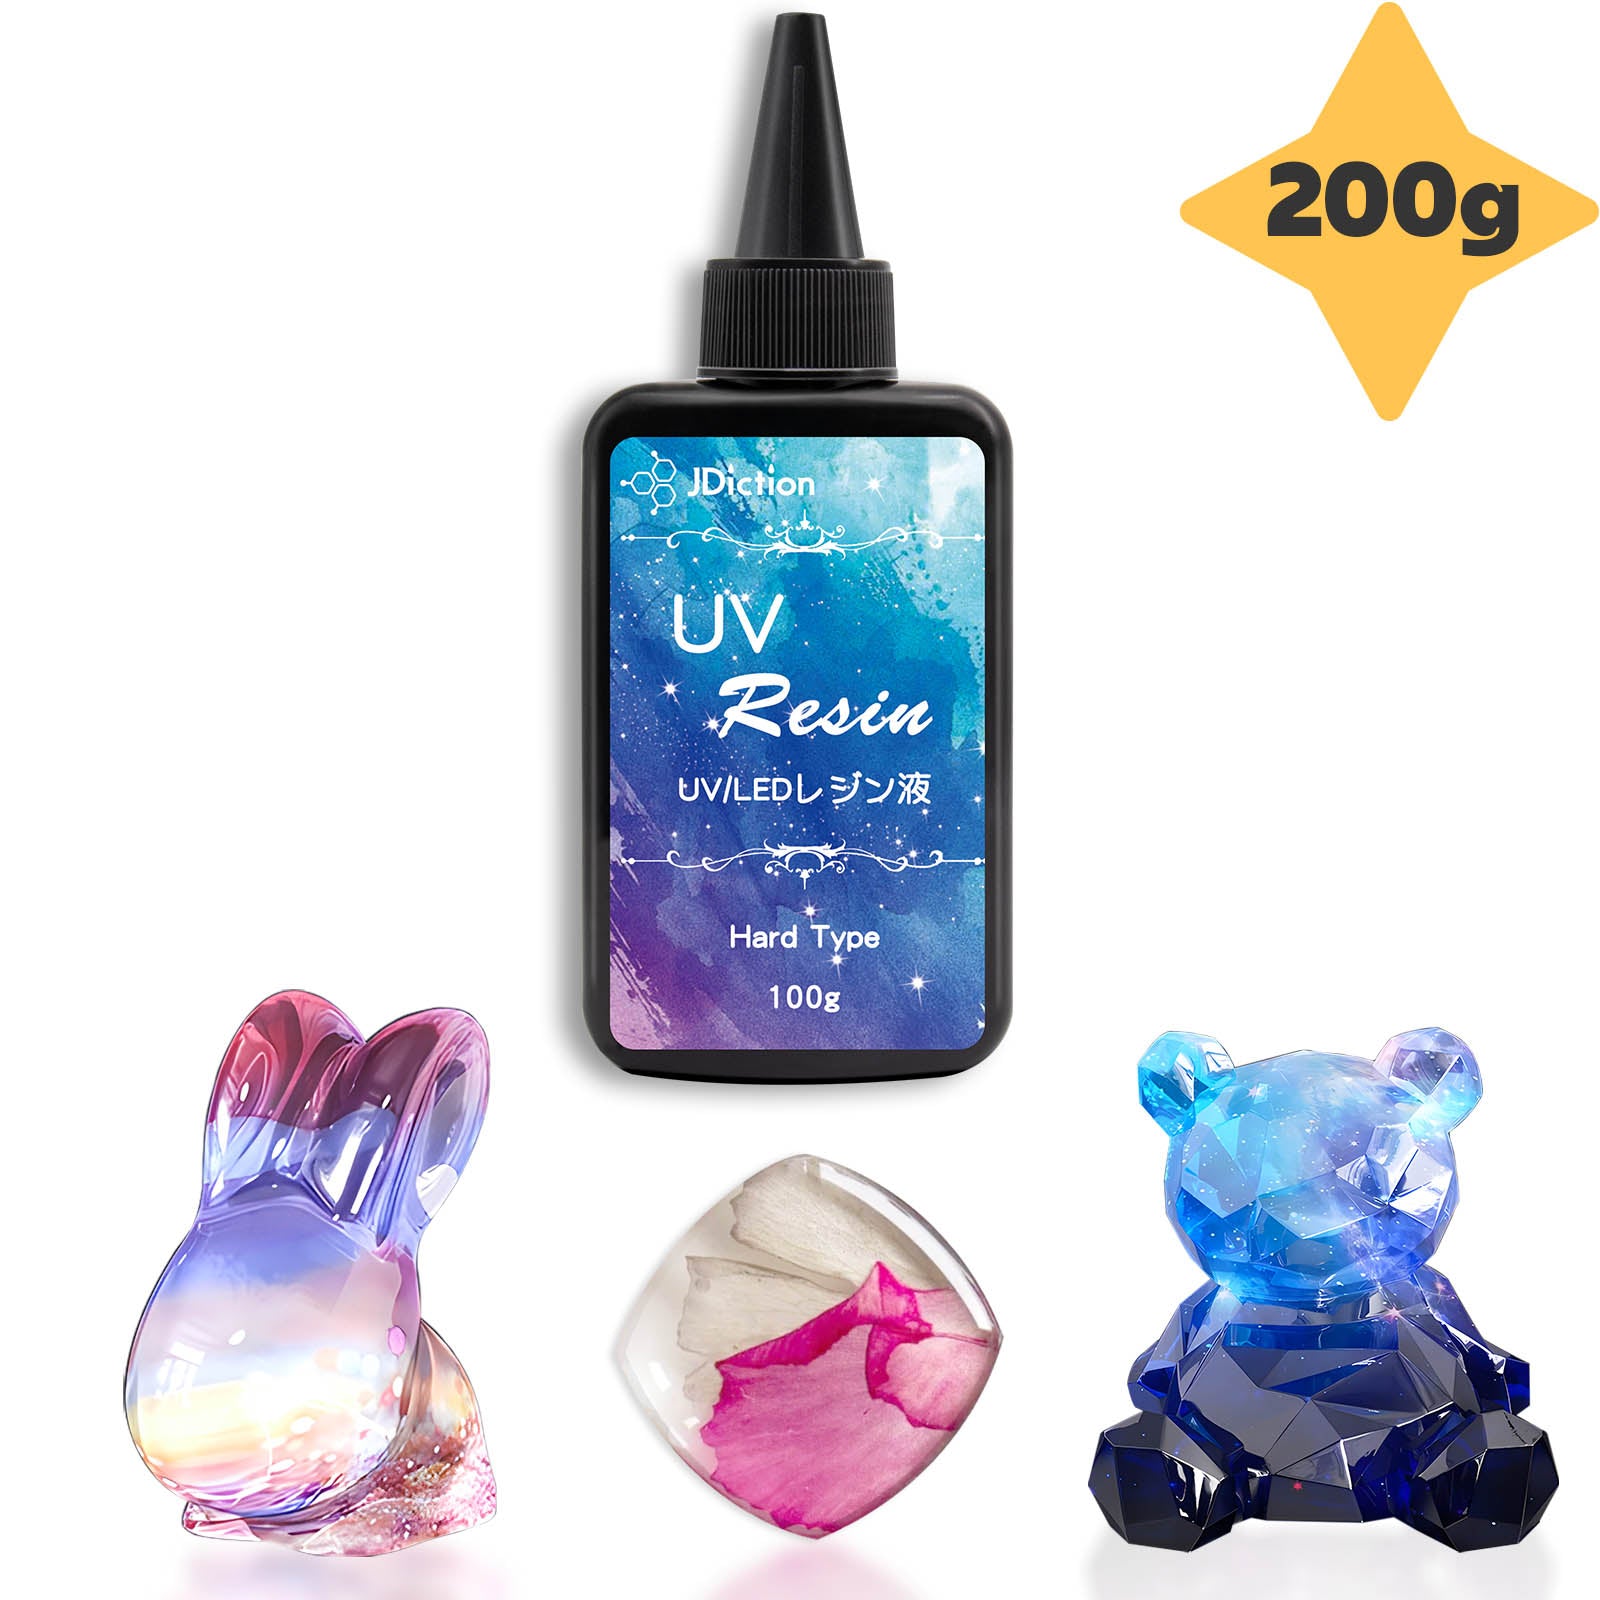 JDiction High Viscosity UV Resin - 300g